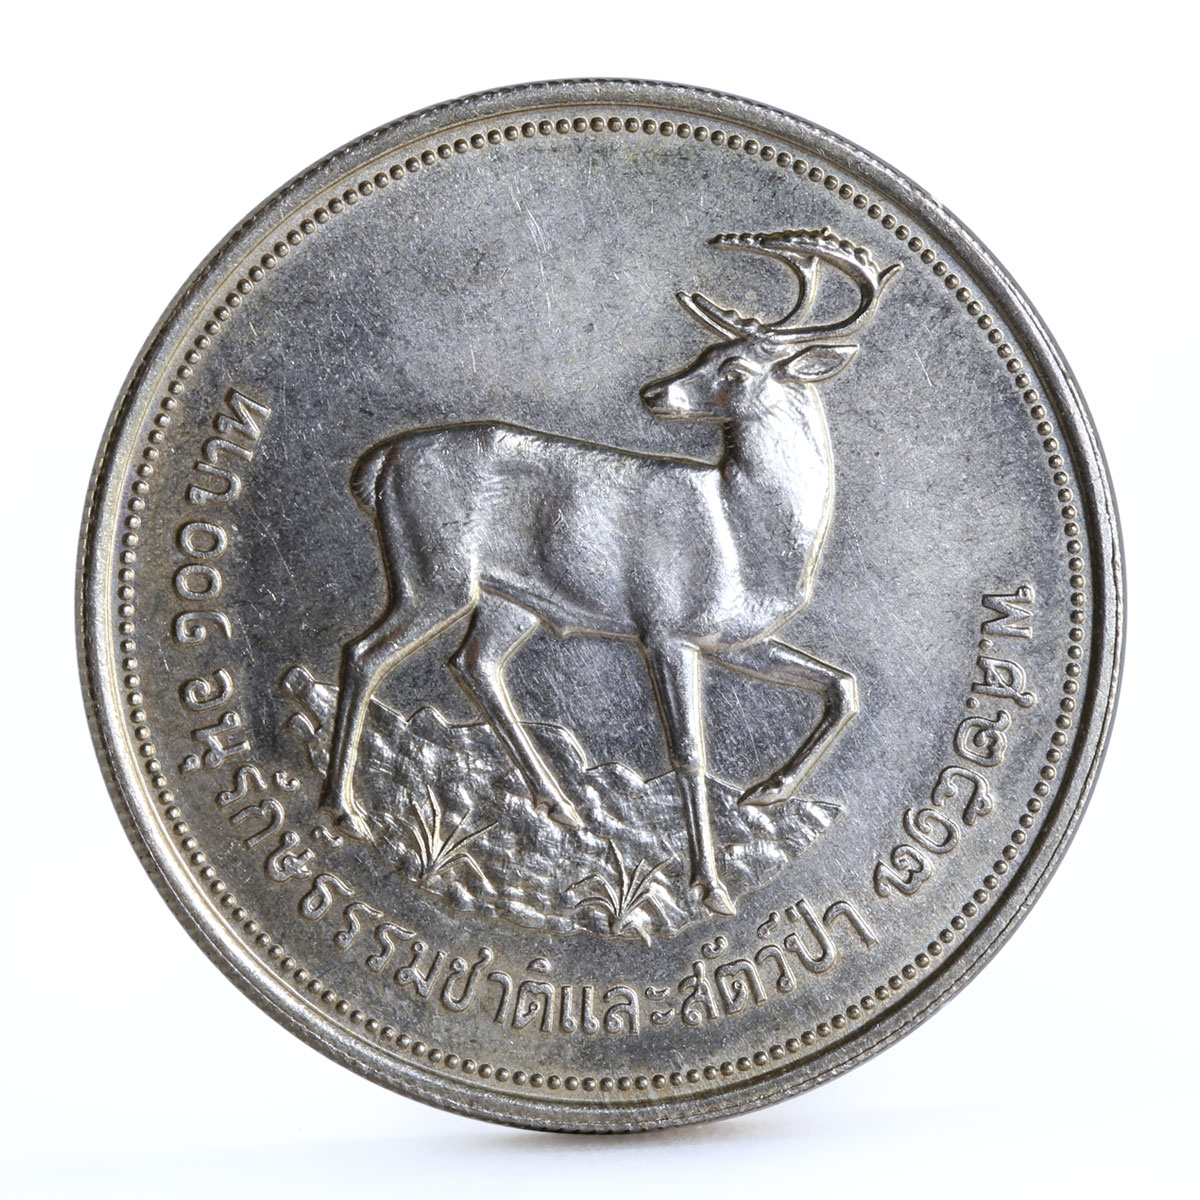 Thailand 100 baht World Wildlife Fund series Deer silver coin 1974